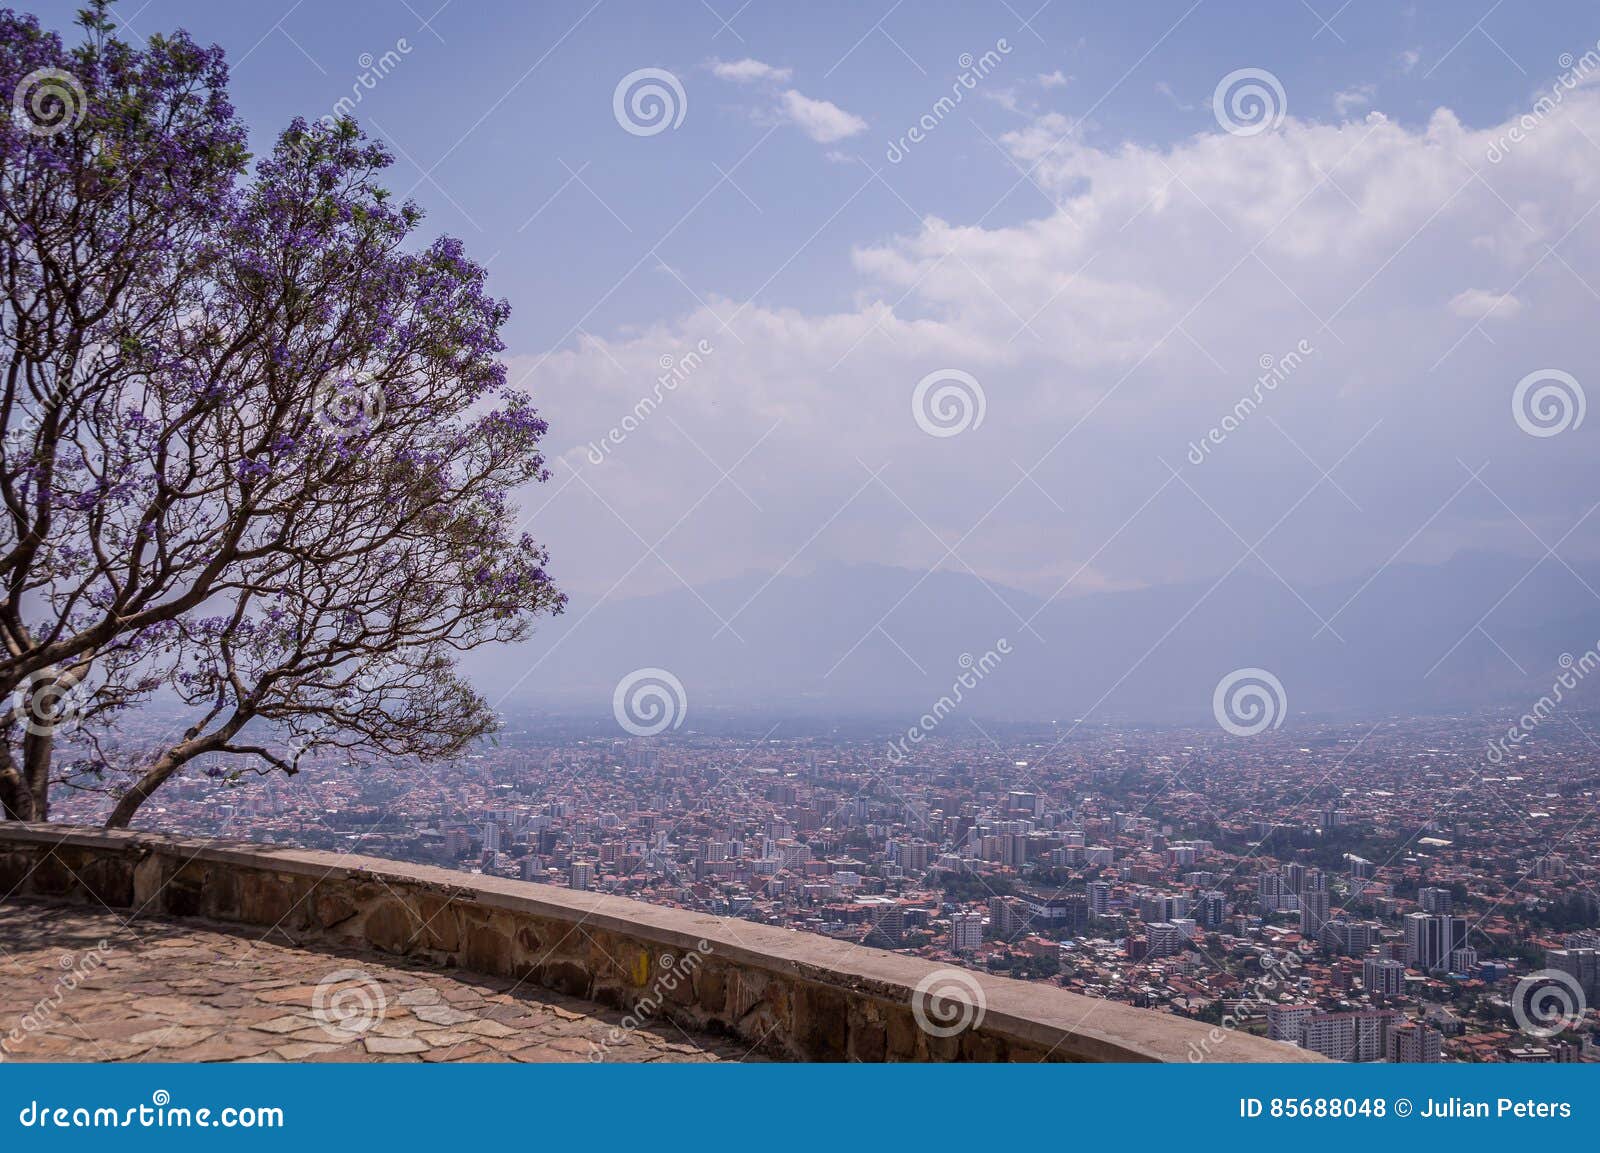 panoramic view of cochabamba, bolivia